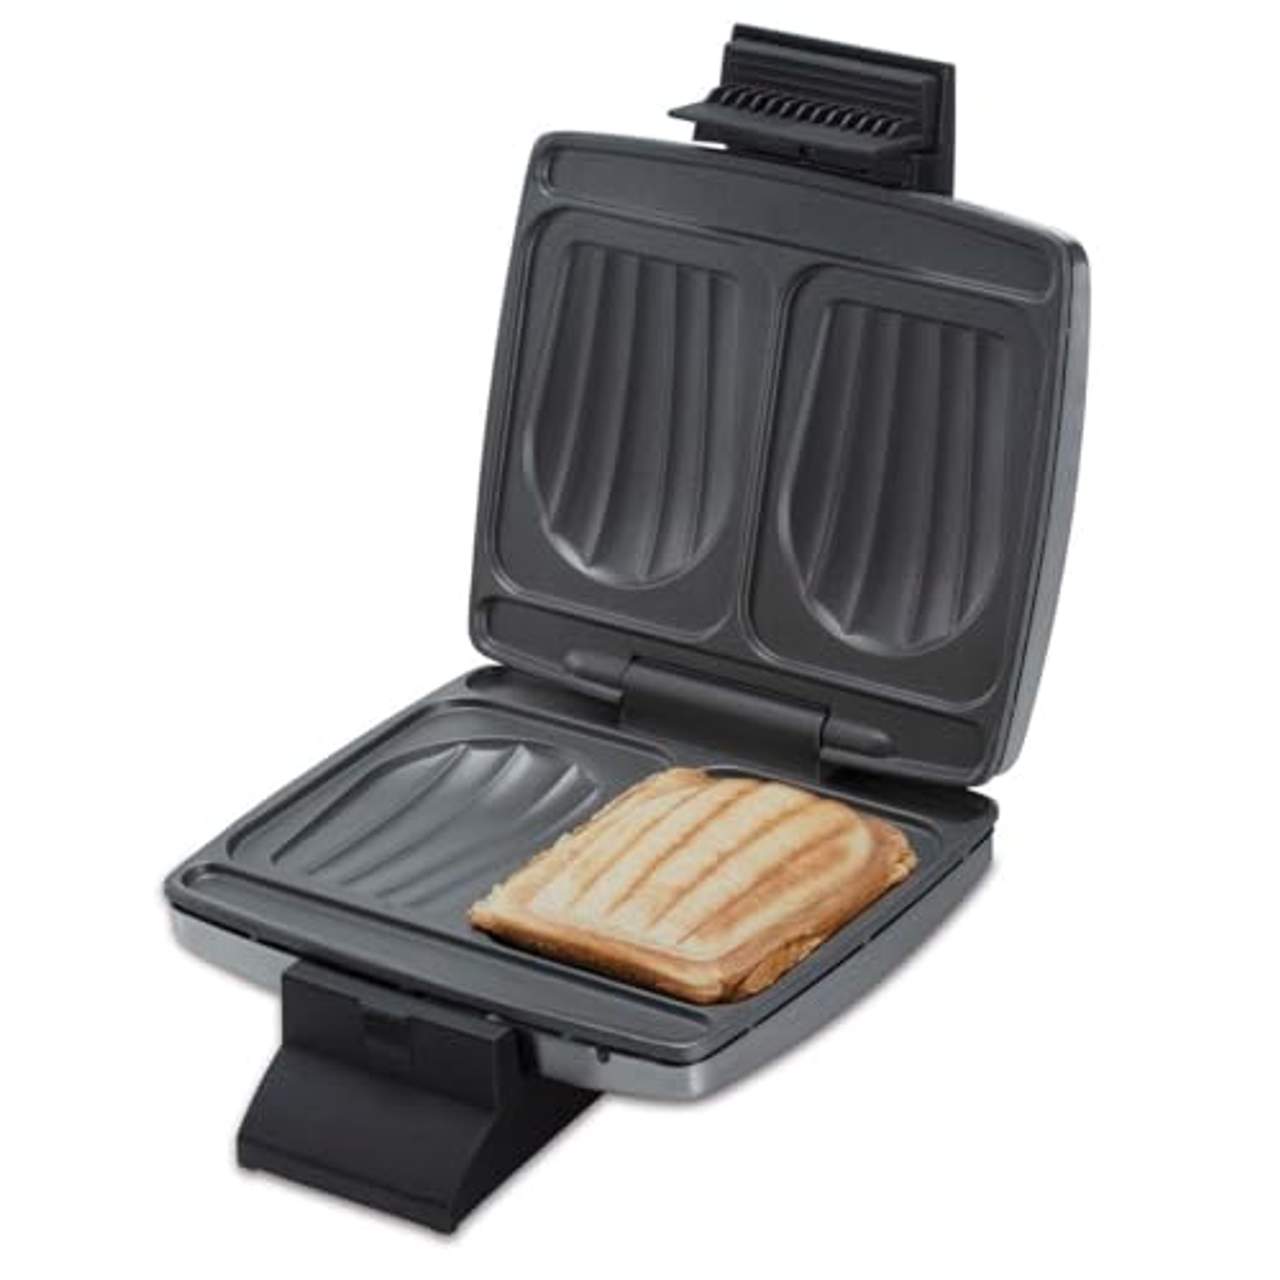 Cloer 6235 Sandwichmaker 930 W